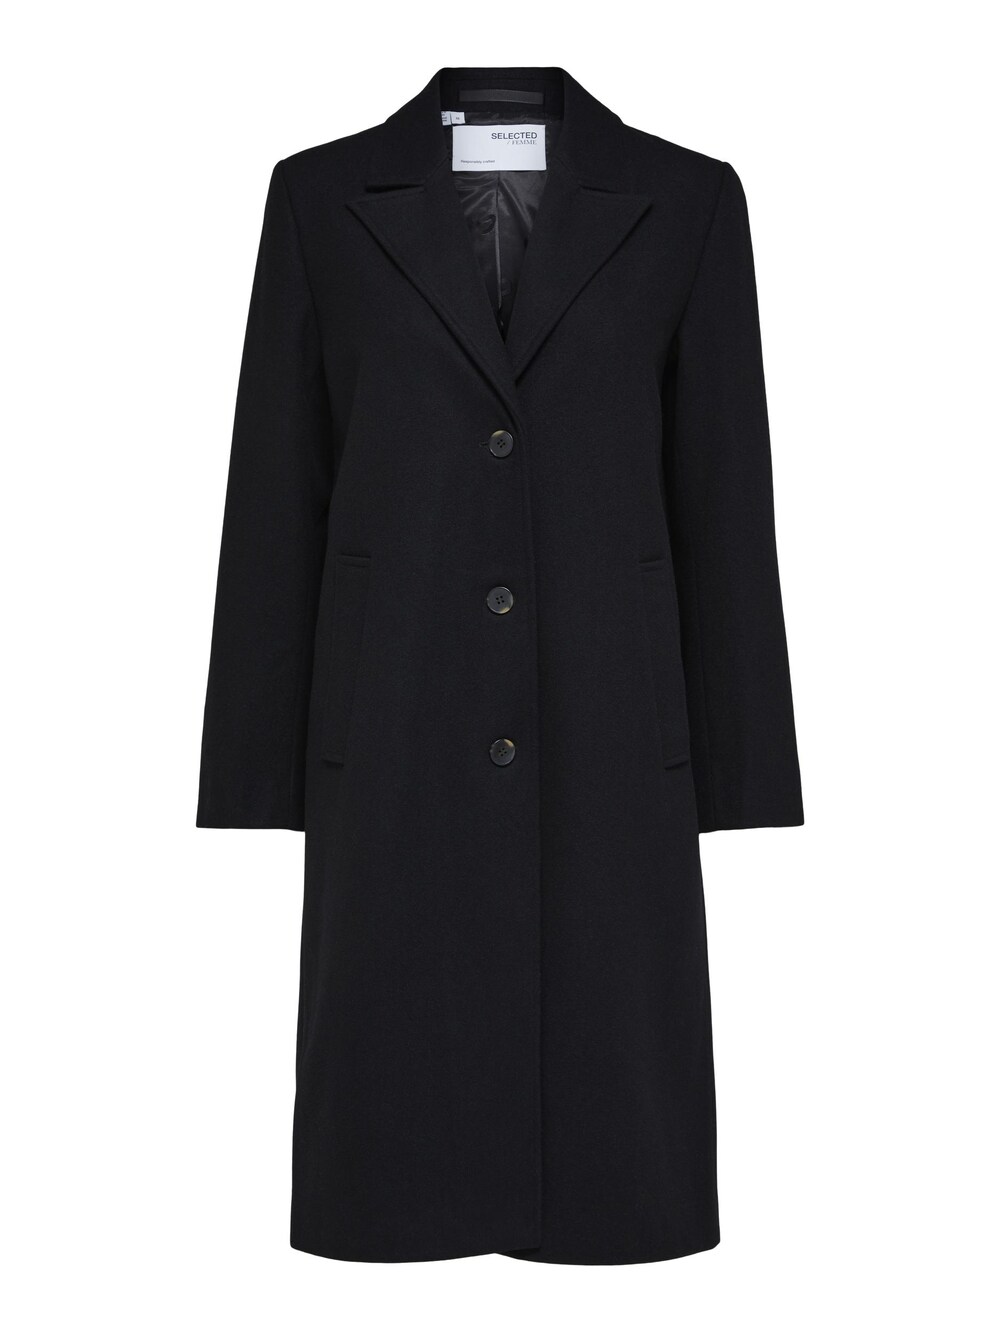 Межсезонное пальто Selected FALMA, черный межсезонное пальто selected new element черный